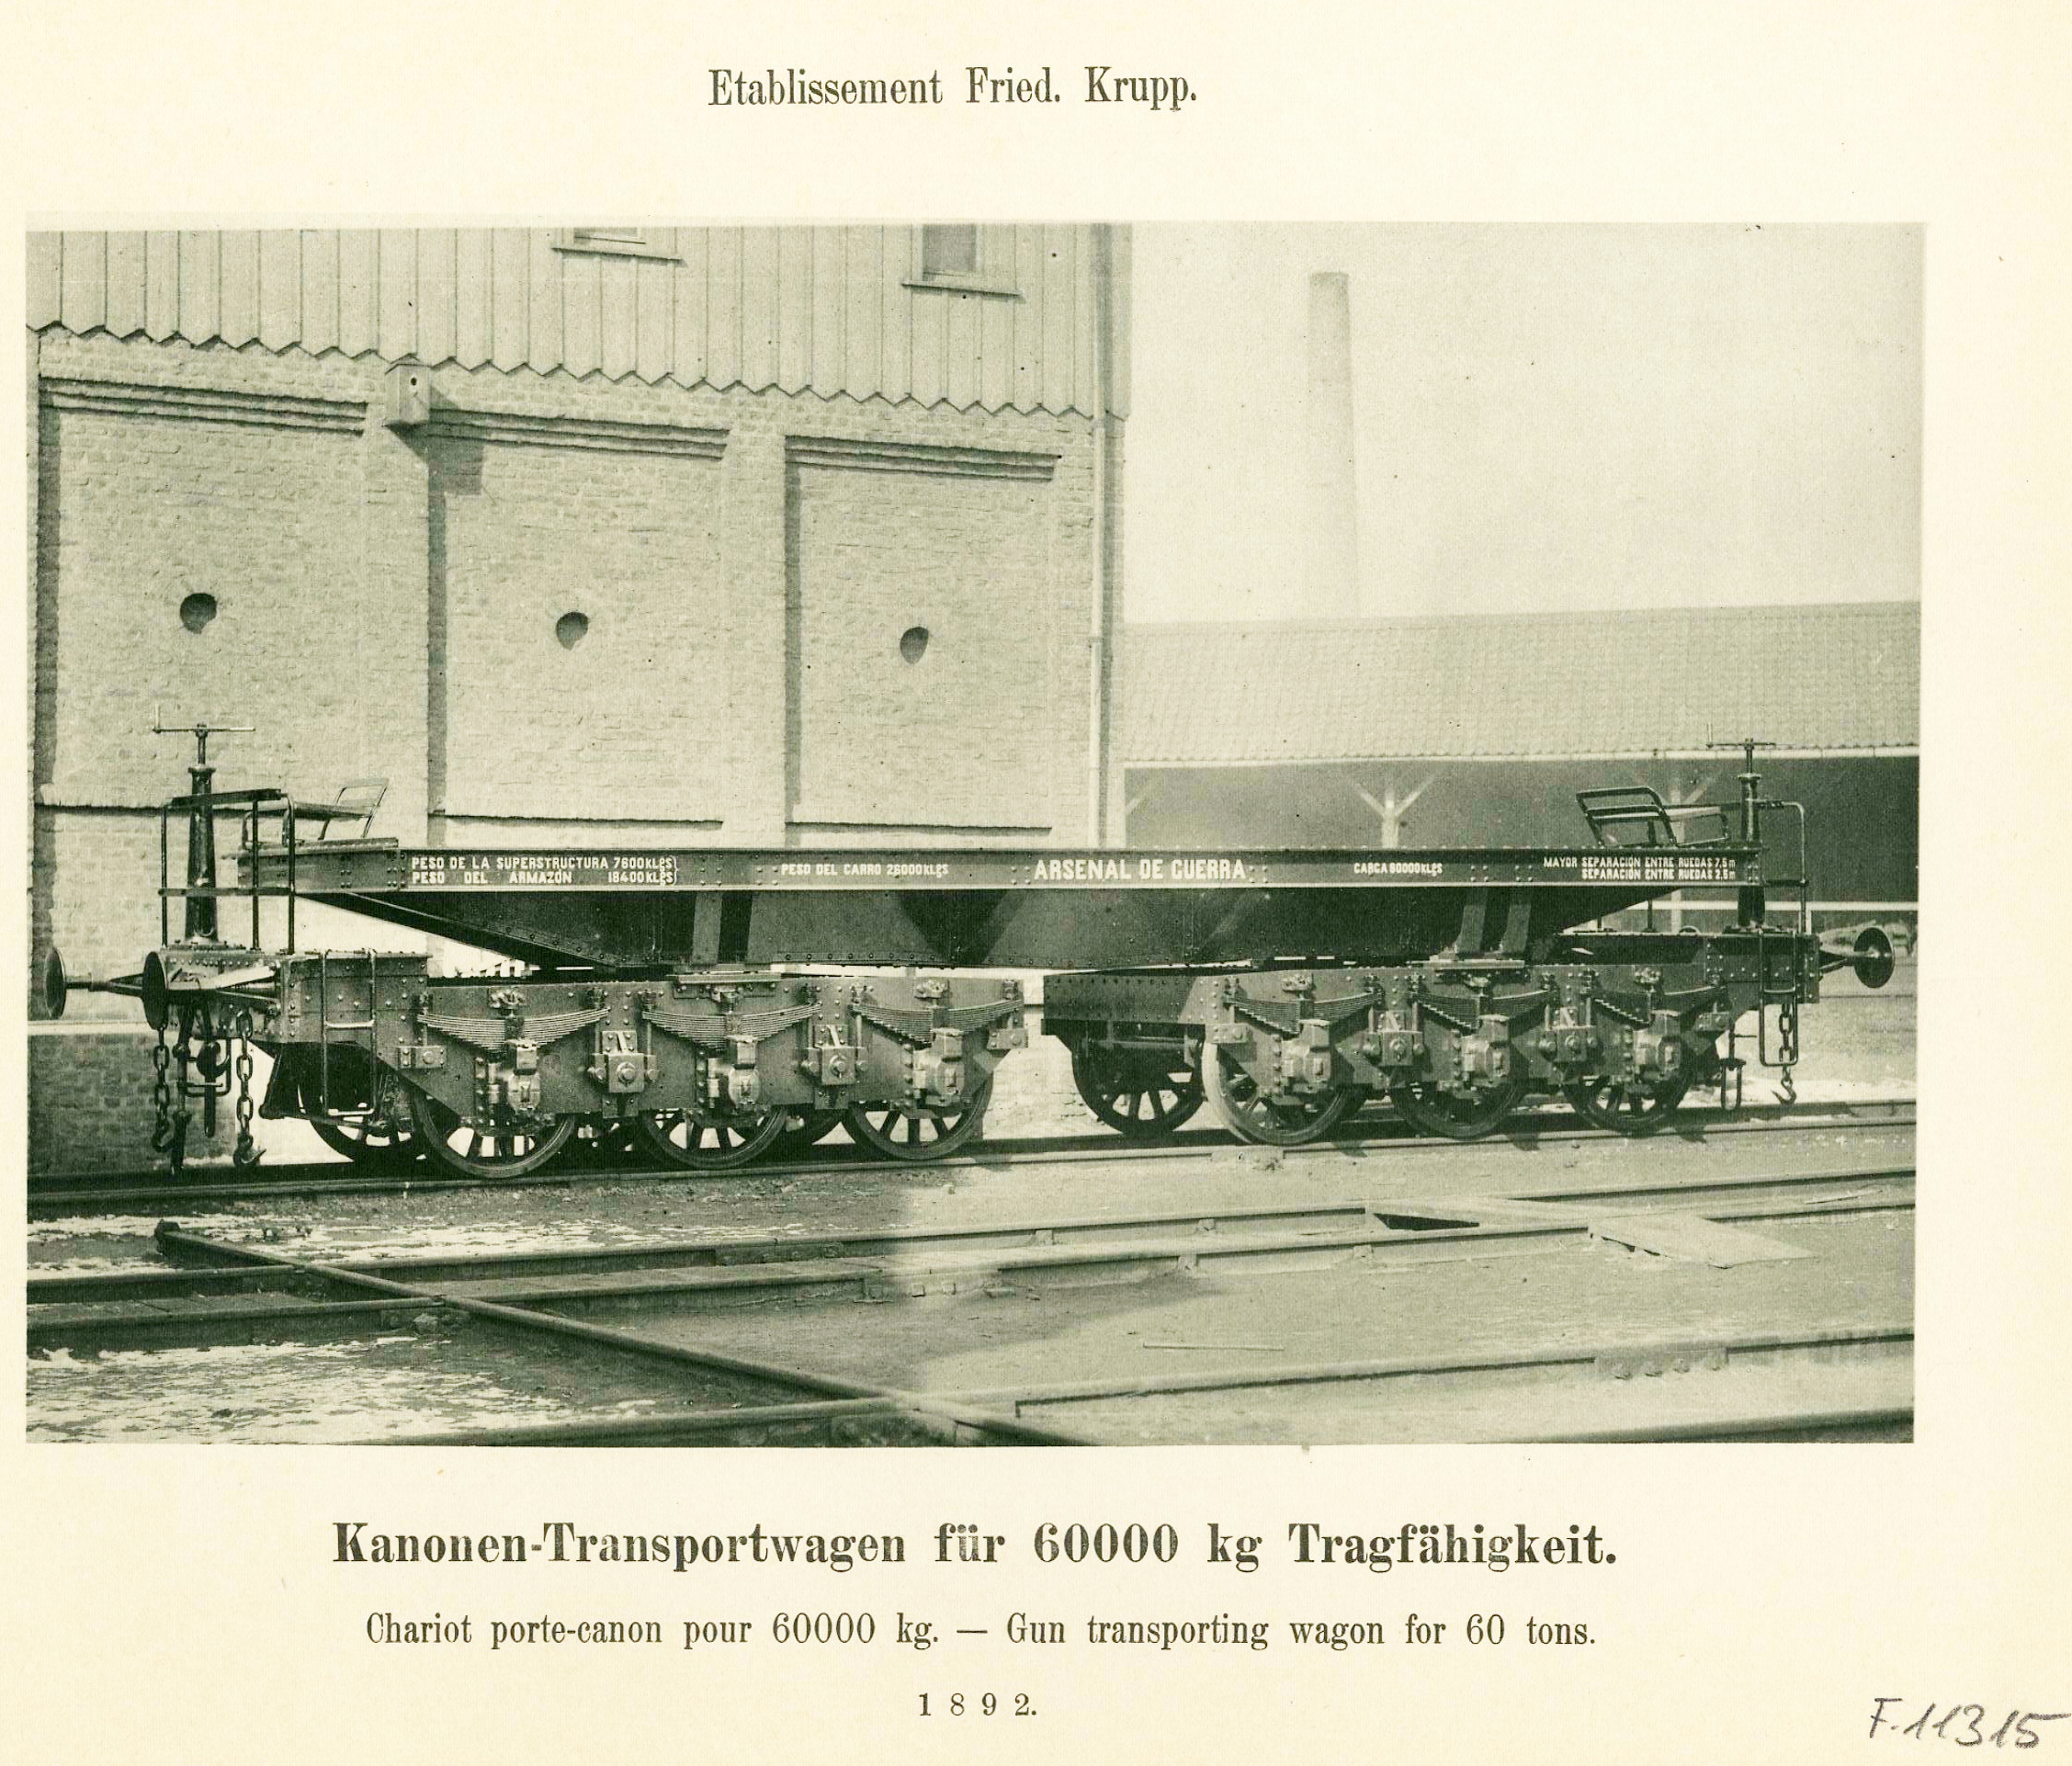 Vagón porta cañones para 60000 kg. 1892